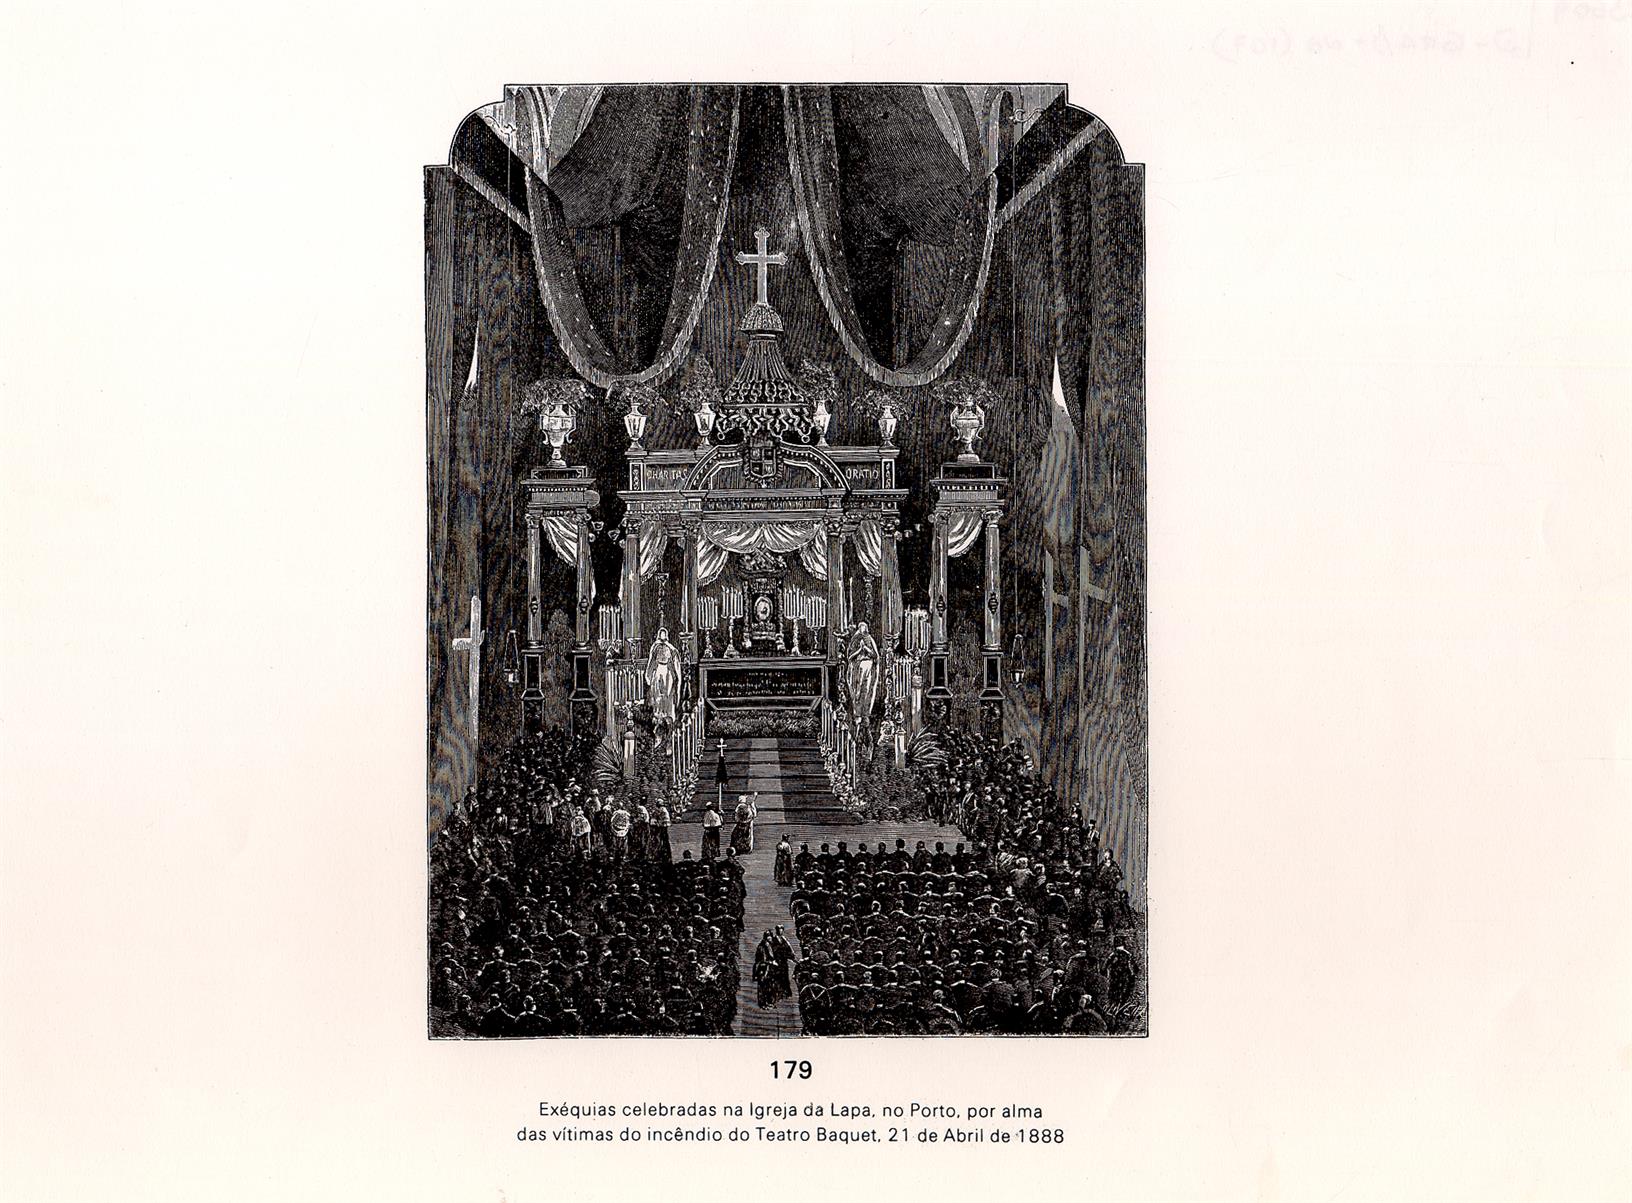 Exéquias celebradas na Igreja da Lapa, no Porto, por alma das vítimas do incêndio do Teatro Baquet, 21 de abril de 1888